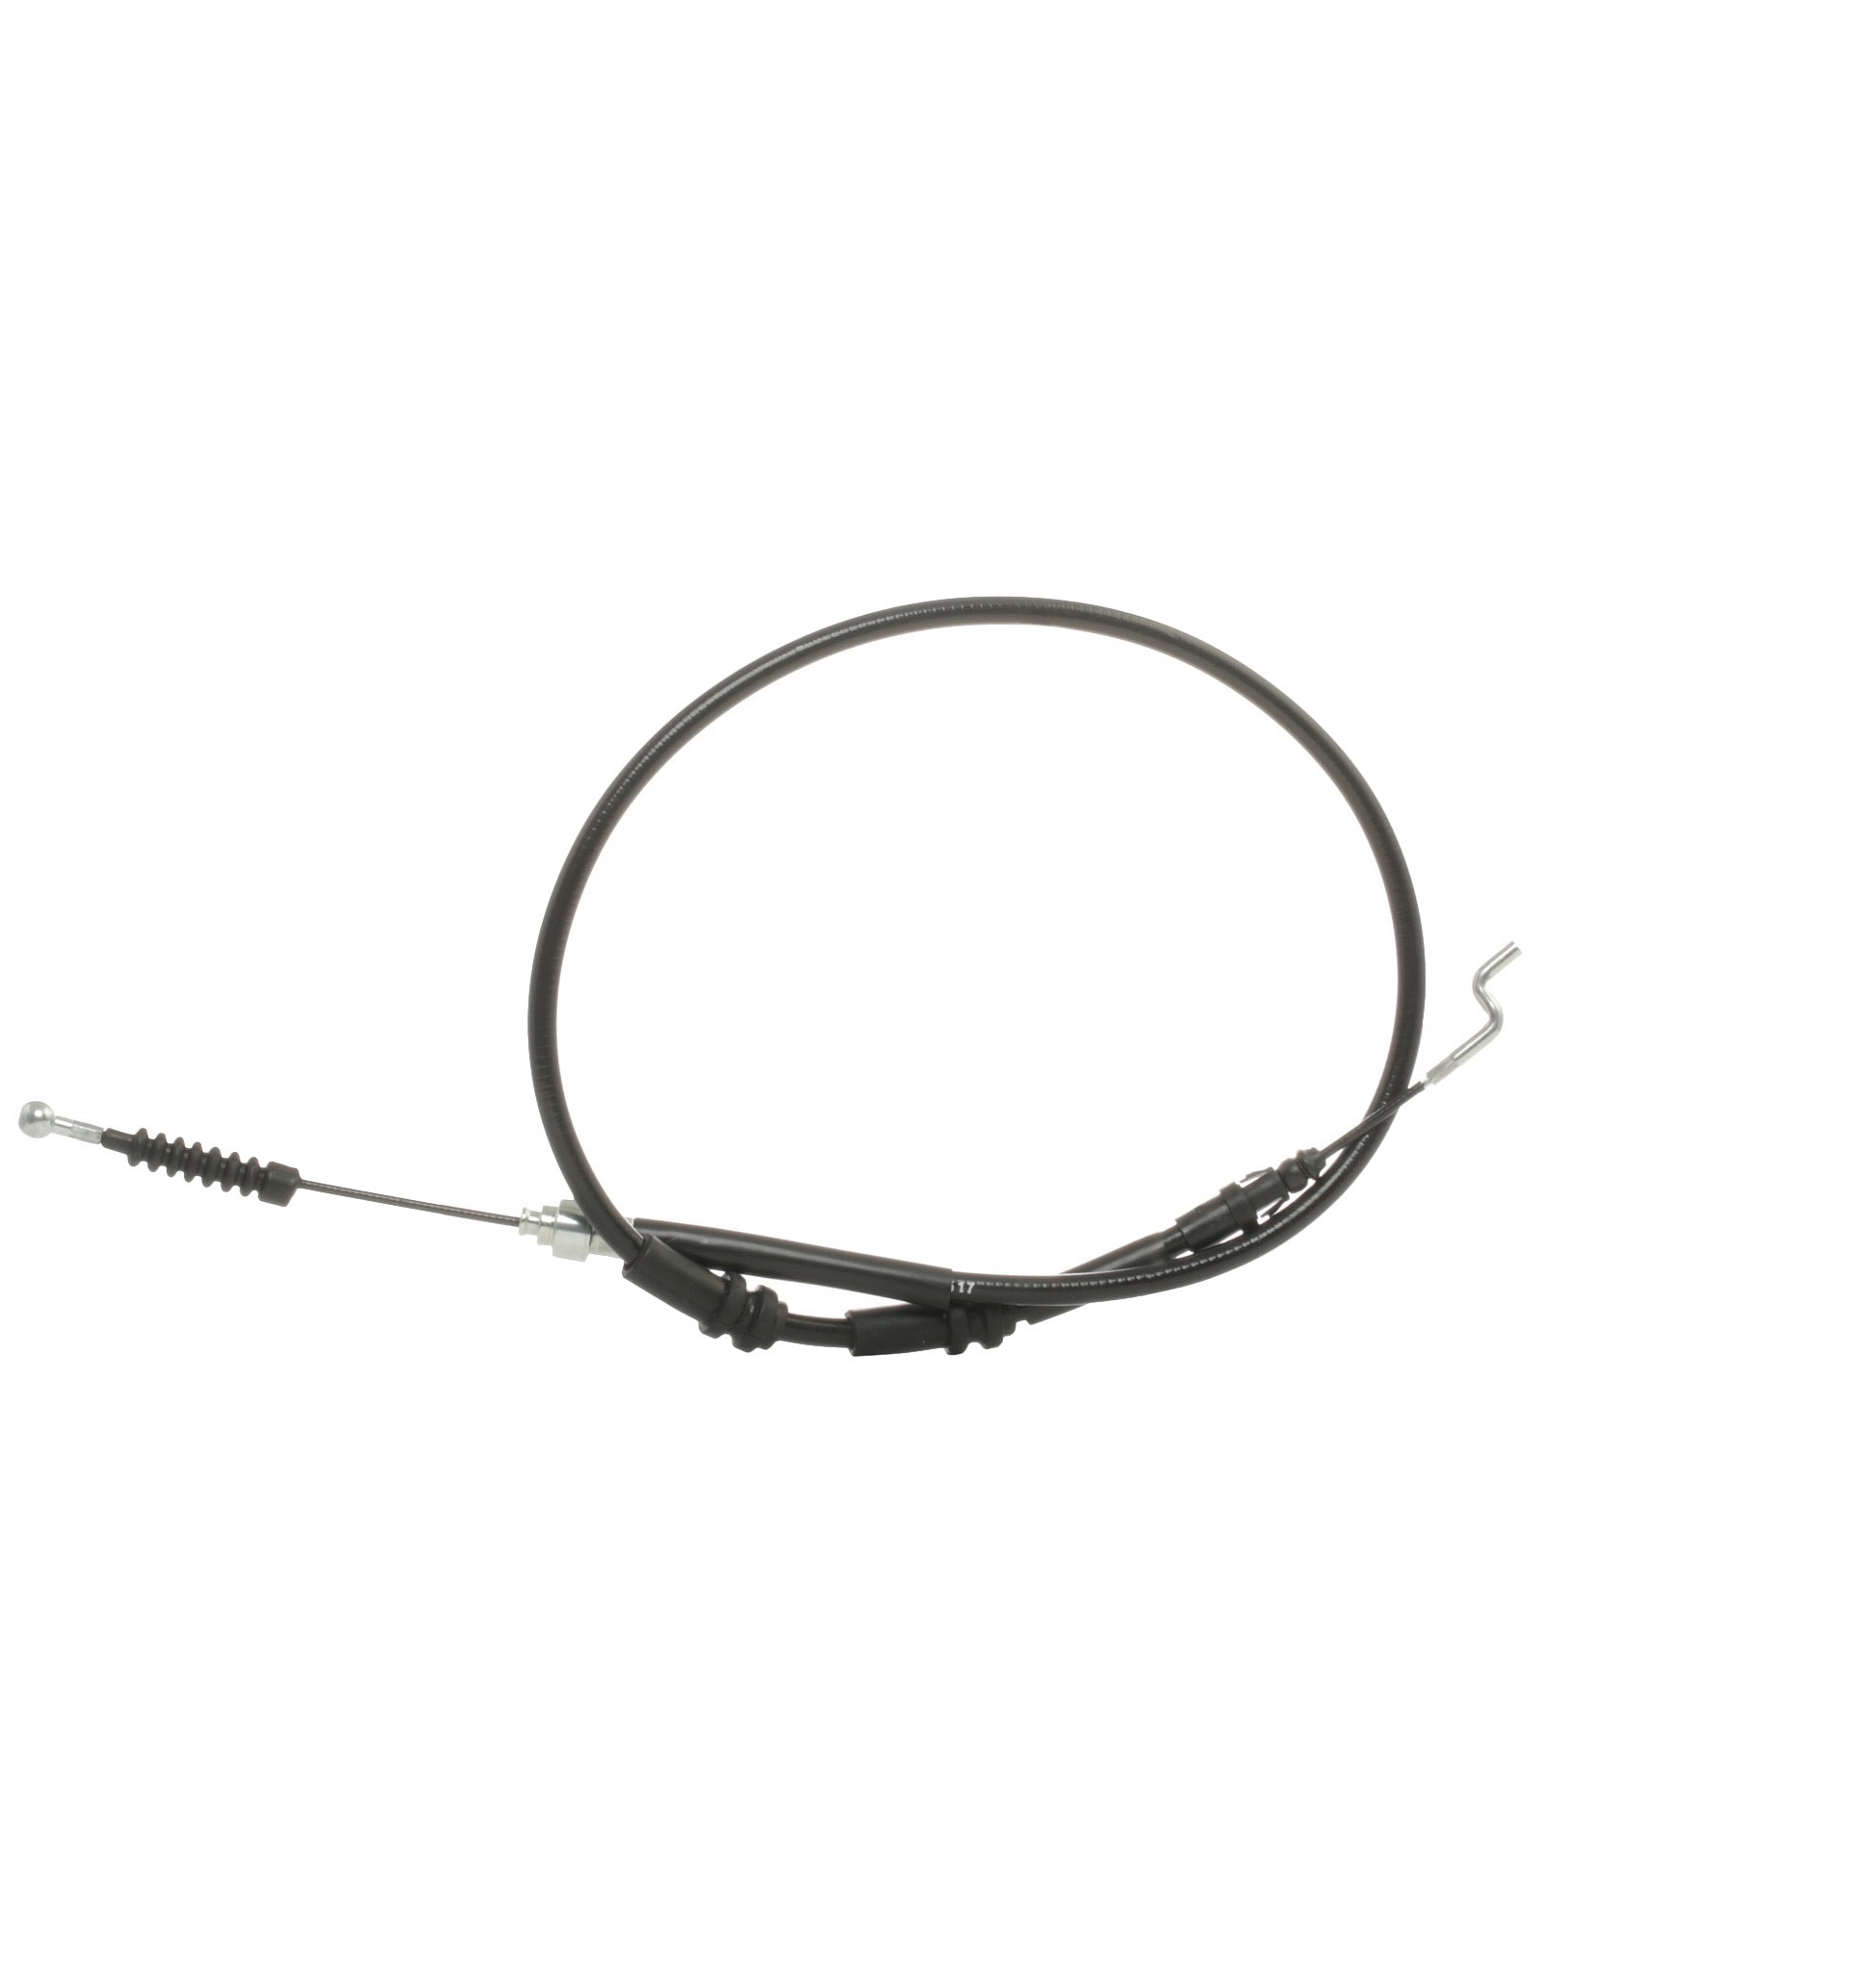 STARK SKCPB-1050151 Hand brake cable Right Rear, Left Rear, 1303, 1005mm, Disc Brake